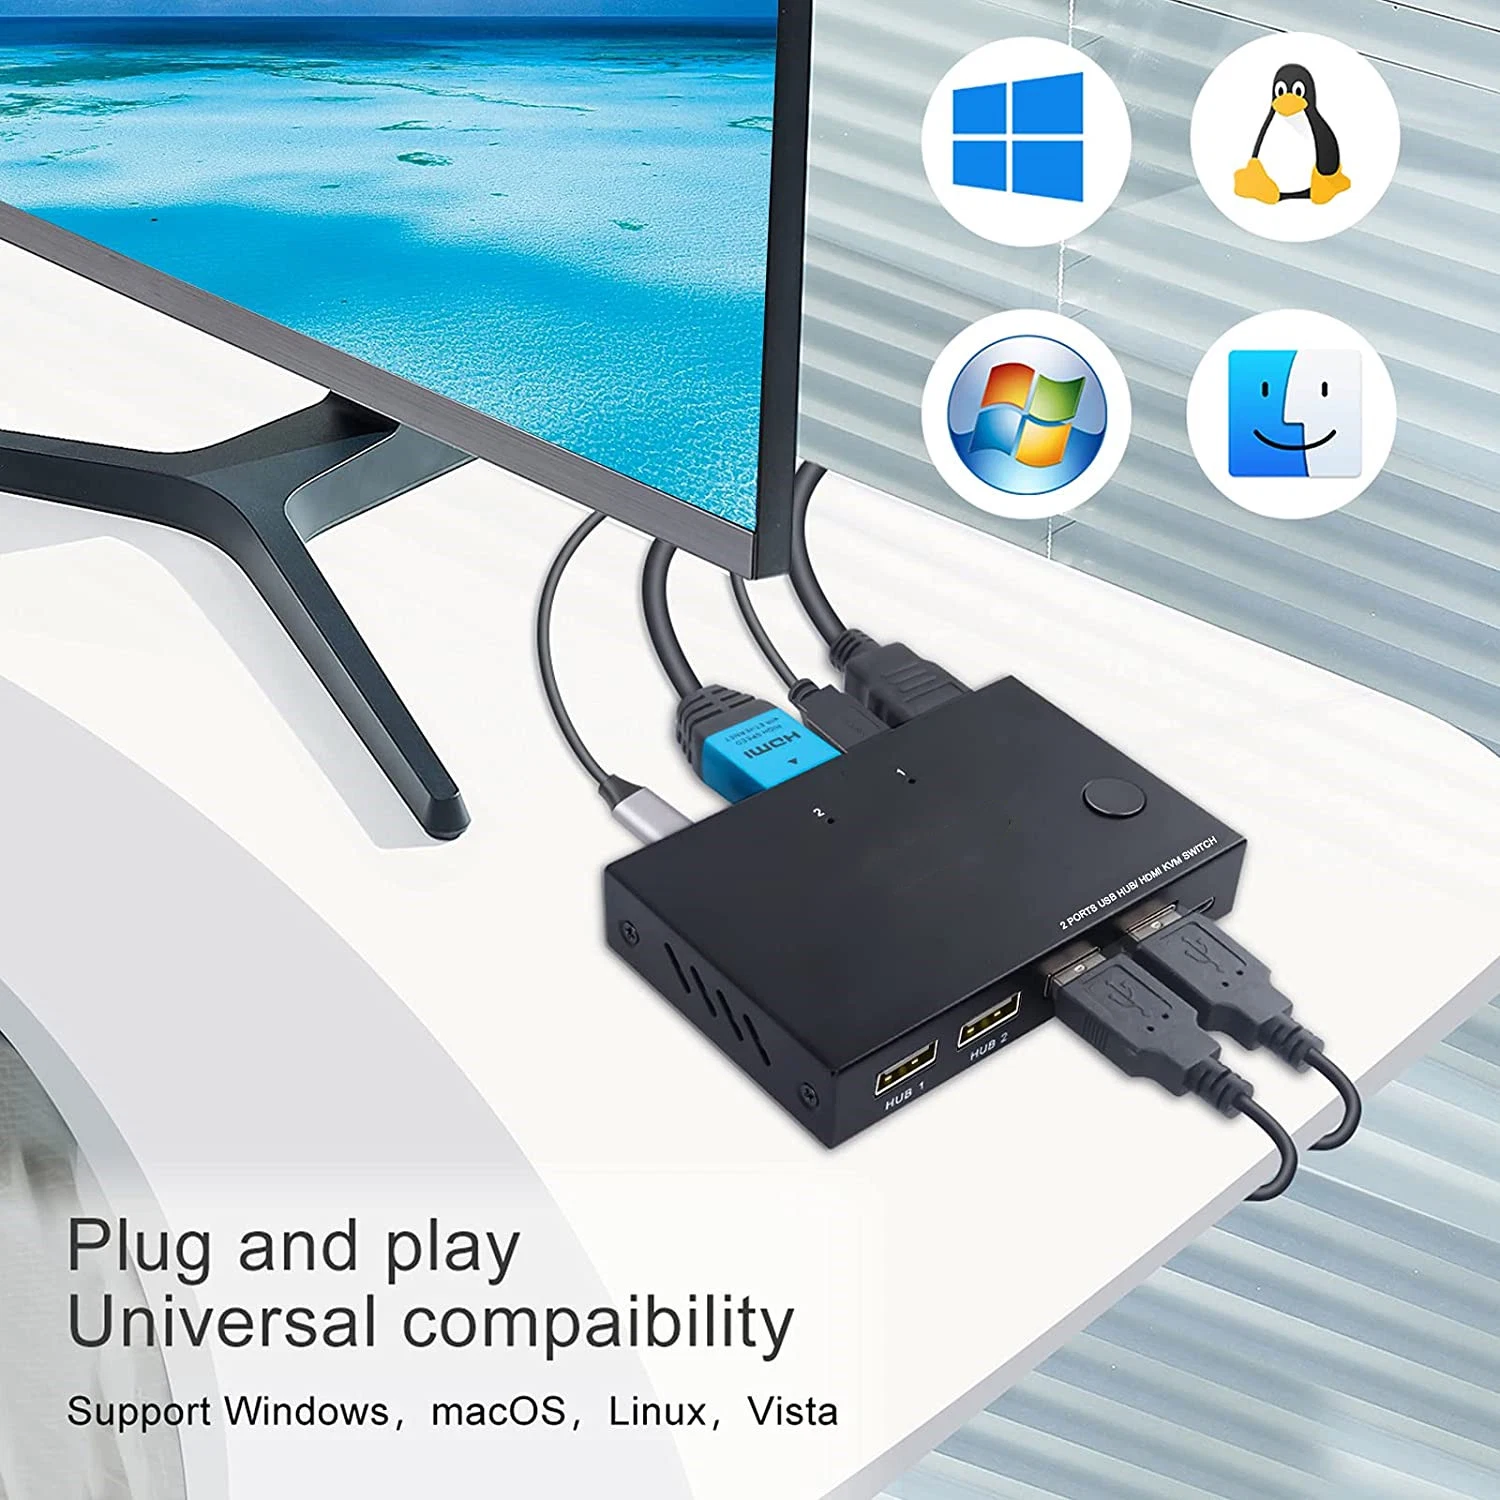 Переключатель Kvm HDMI 2, порт USB Switcher окне UHD 4K@30Гц, 4 порта USB 2.0 концентраторы, поддержка беспроводной клавиатуры и мыши для ноутбуков/PC/PS4/xBox/HDTV, с поддержкой HD